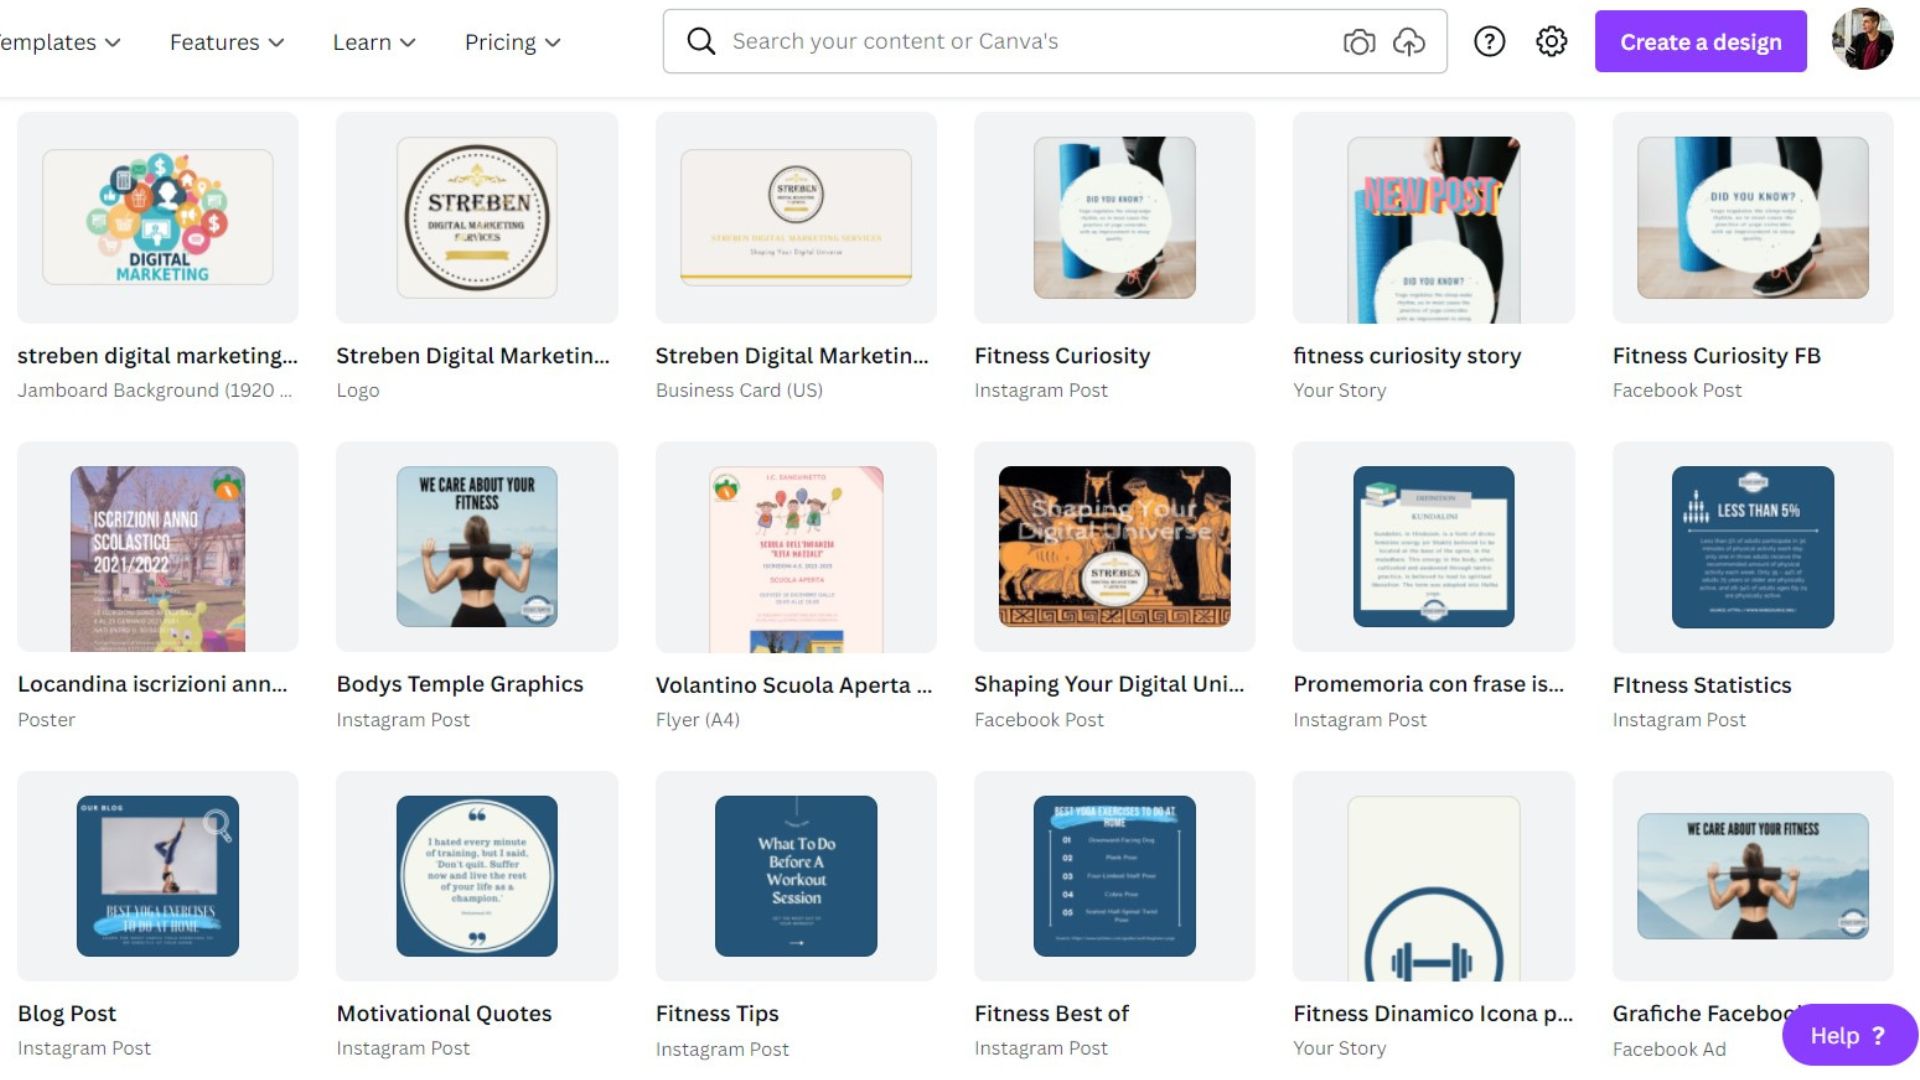 streben digital marketing services portfolio graphic elements